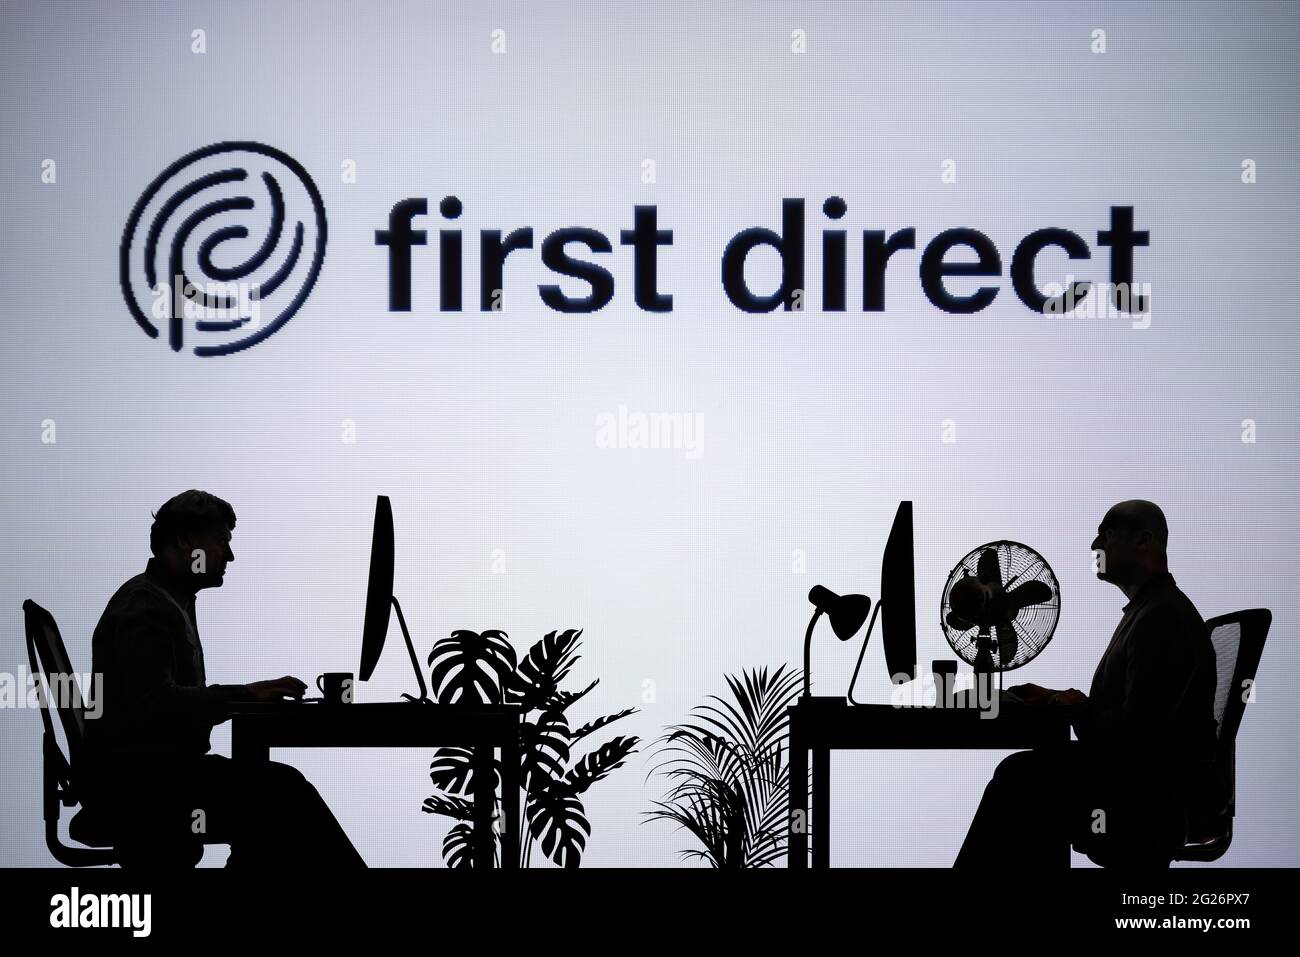 Le logo First Direct est visible sur un écran LED en arrière-plan tandis que deux personnes silhouetées travaillent dans un environnement de bureau (usage éditorial uniquement) Banque D'Images